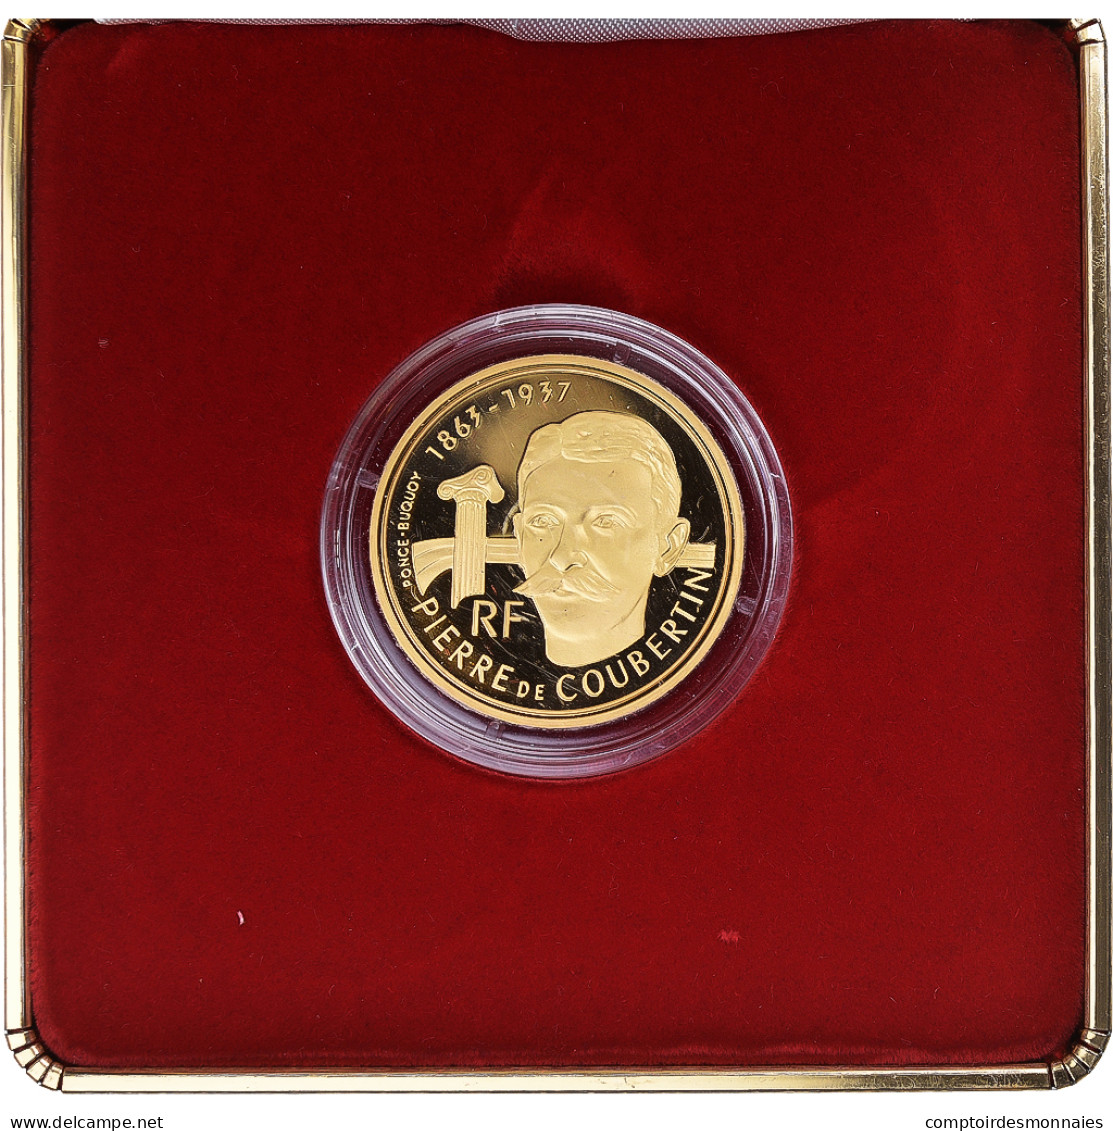 Monnaie, France, Albertville, Coubertin, 500 Francs, 1991, Paris, FDC, Or - Commémoratives